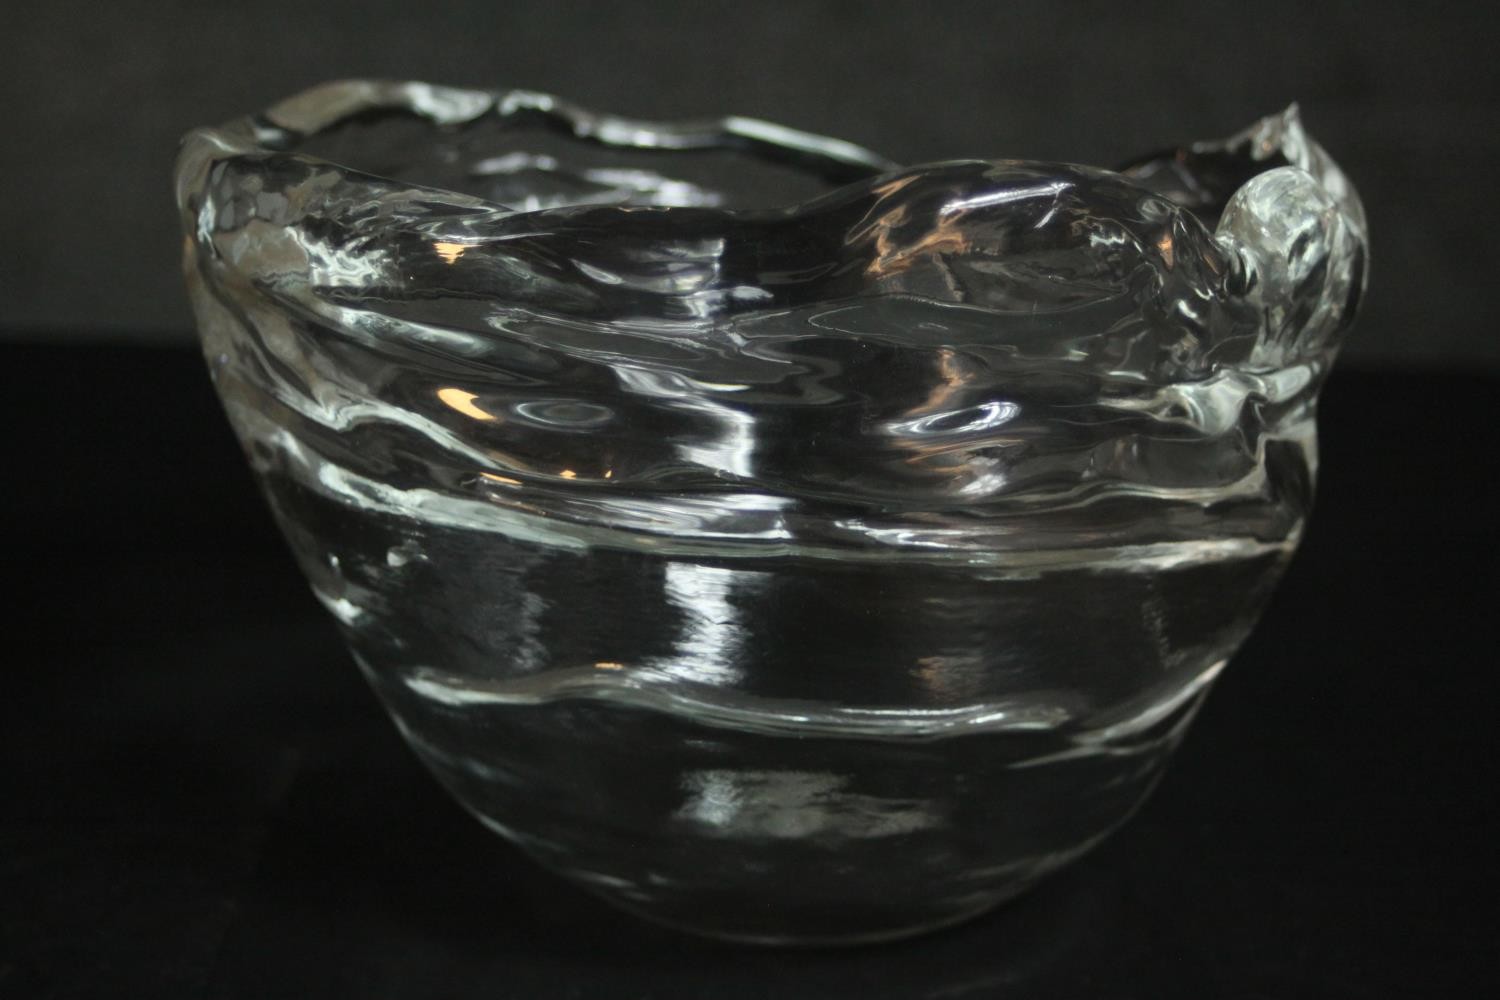 Lasvit (Czech), a 'Frozen' glass bowl designed by Maxim Velcovsky, with original box.